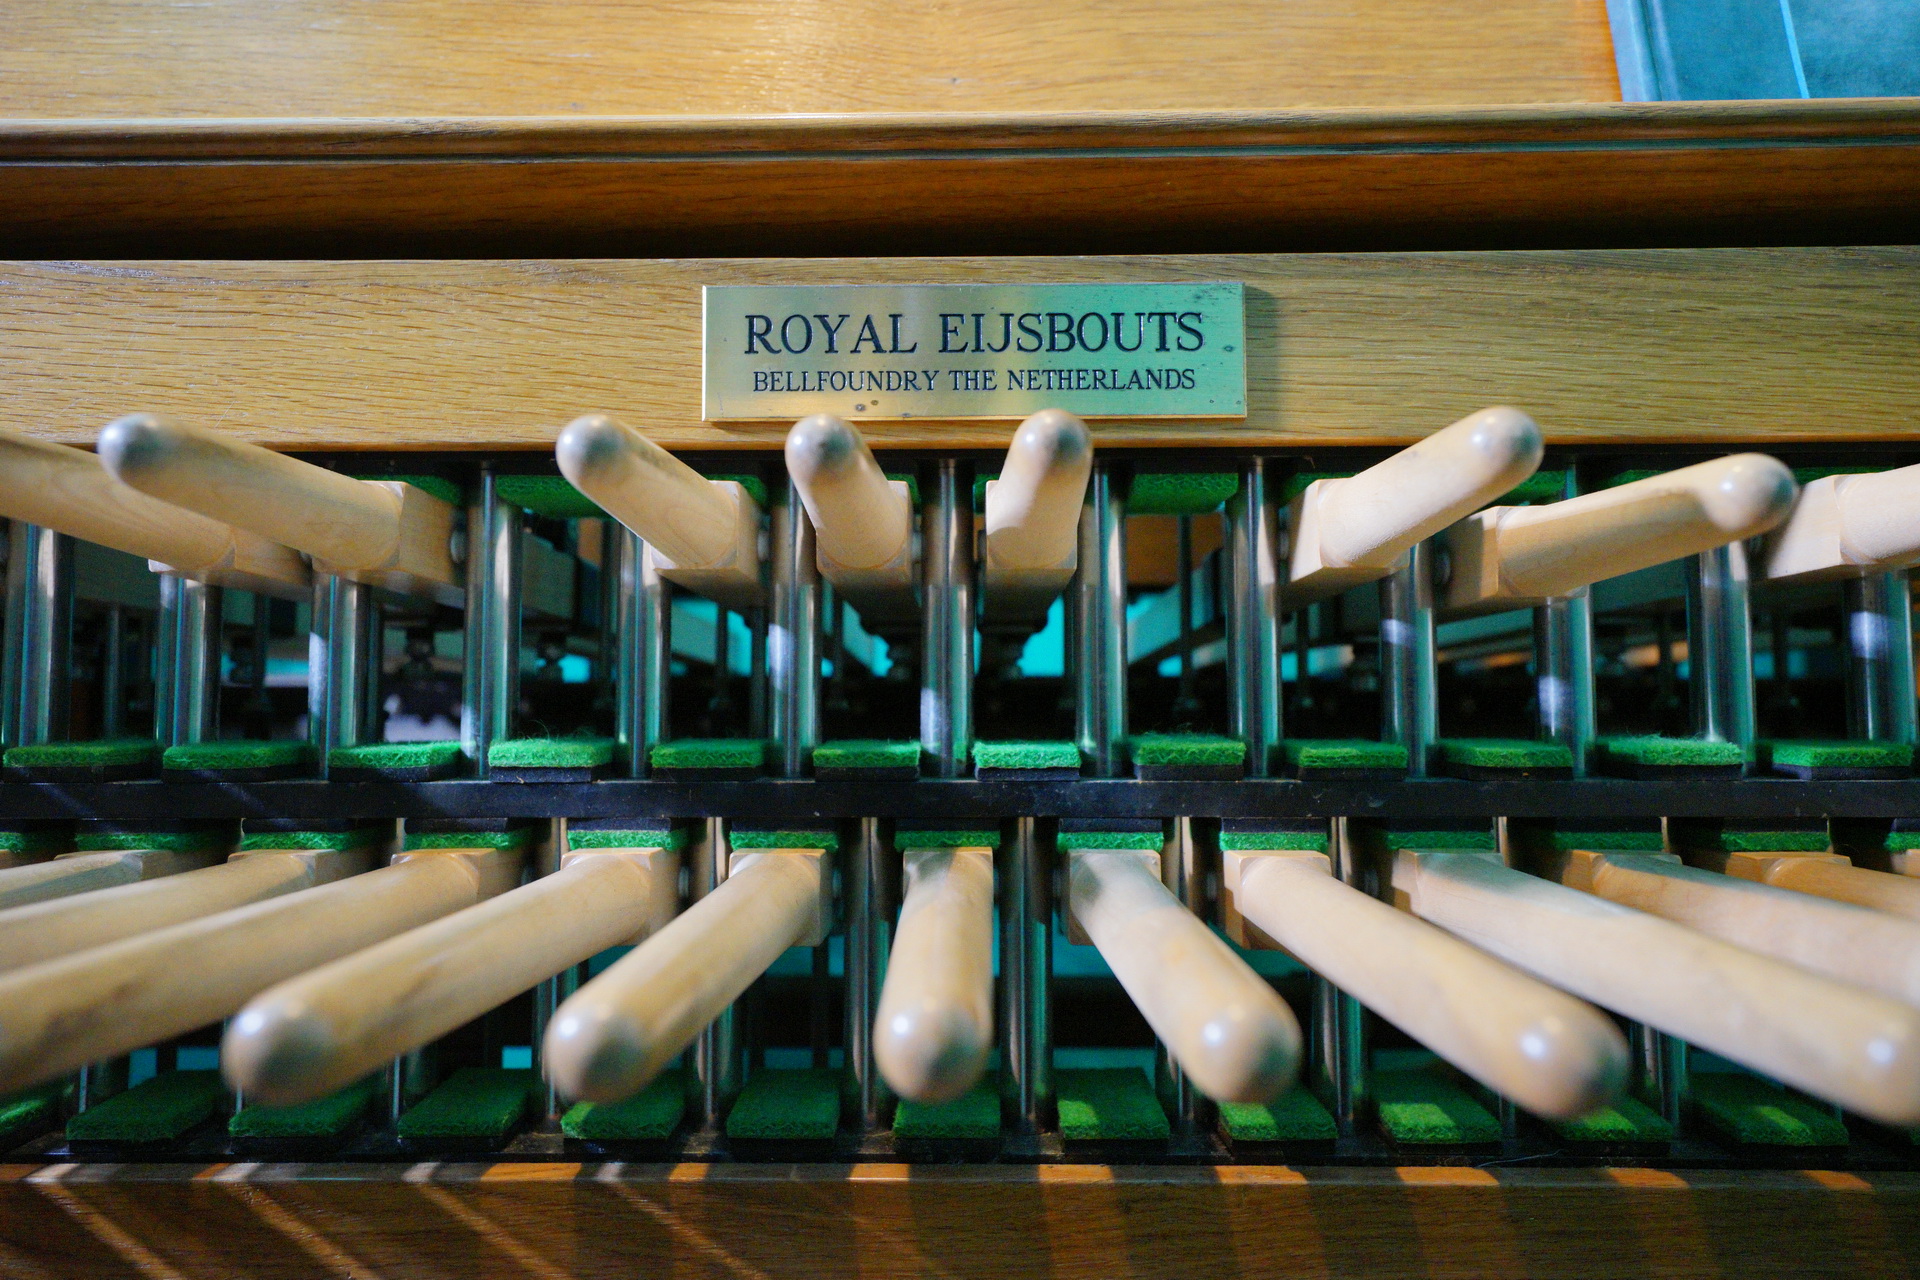 Zbliżenie na klawiaturę carillonu. Powyżej tabliczka z napisem Royal Eijsbouts. Bellfoundry the Netherlands.